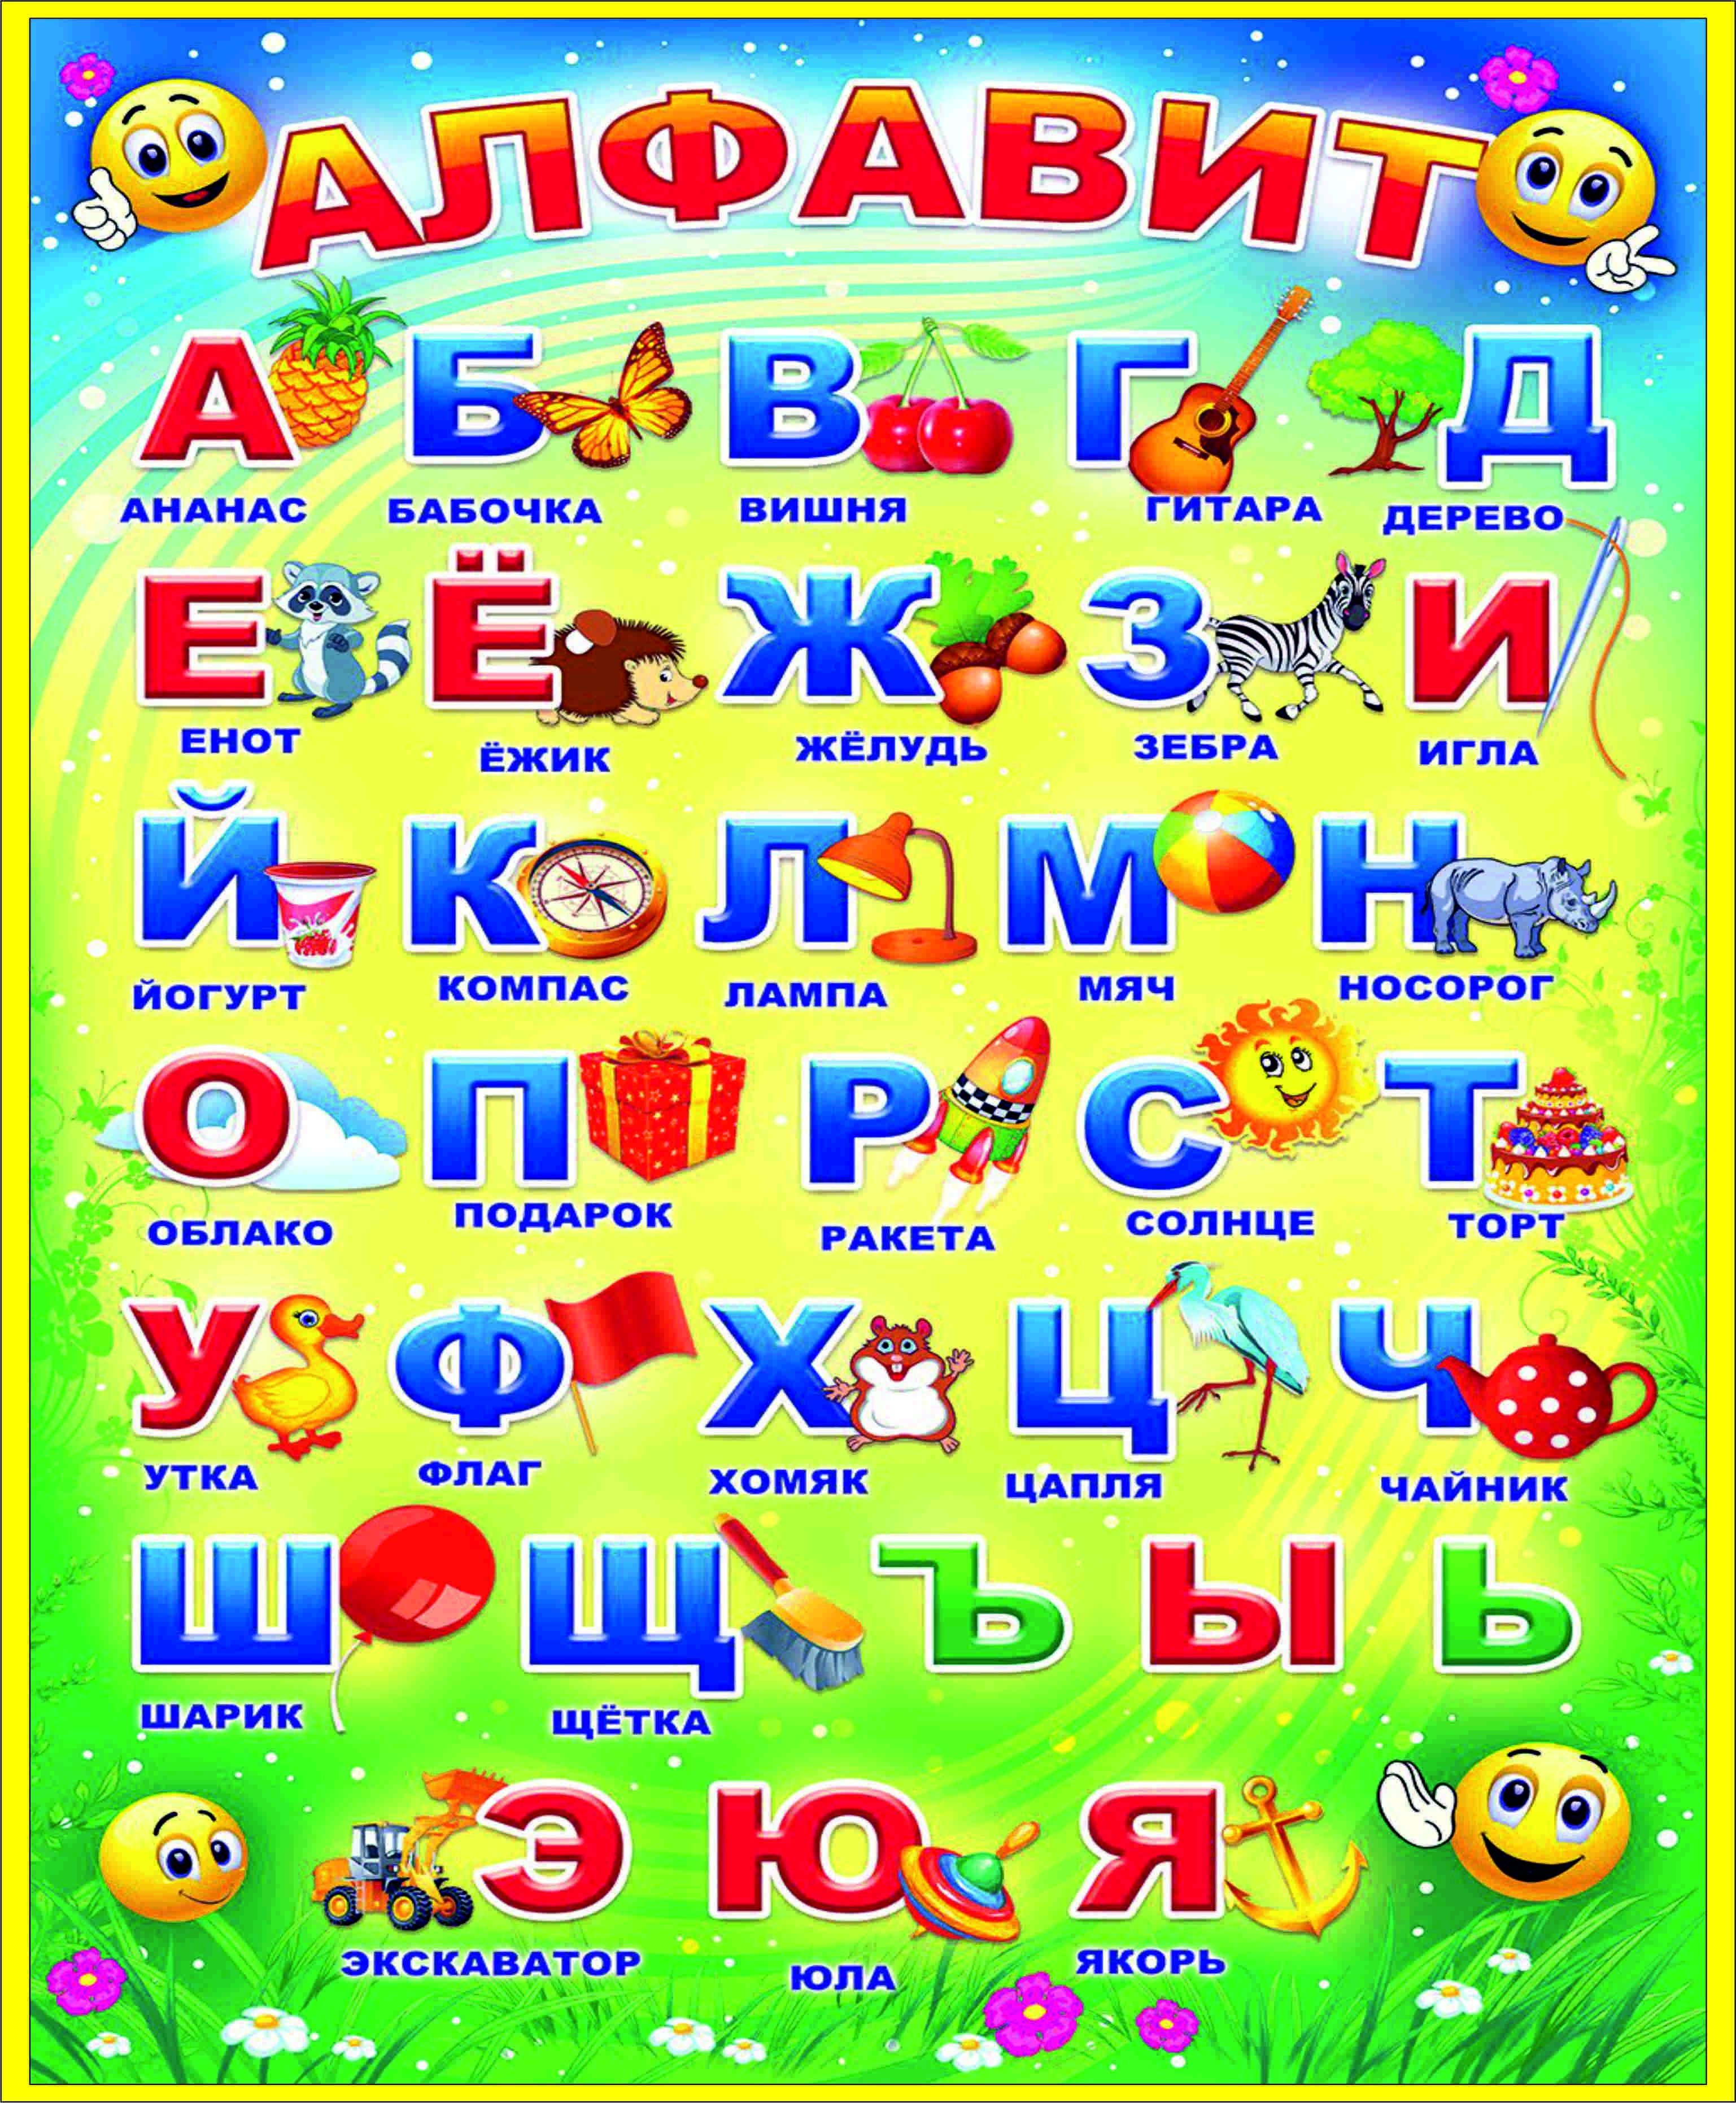 Азбука готов 4. Алфавит. Русский алфавит. Алфавит для детей. Алфавит "детский".